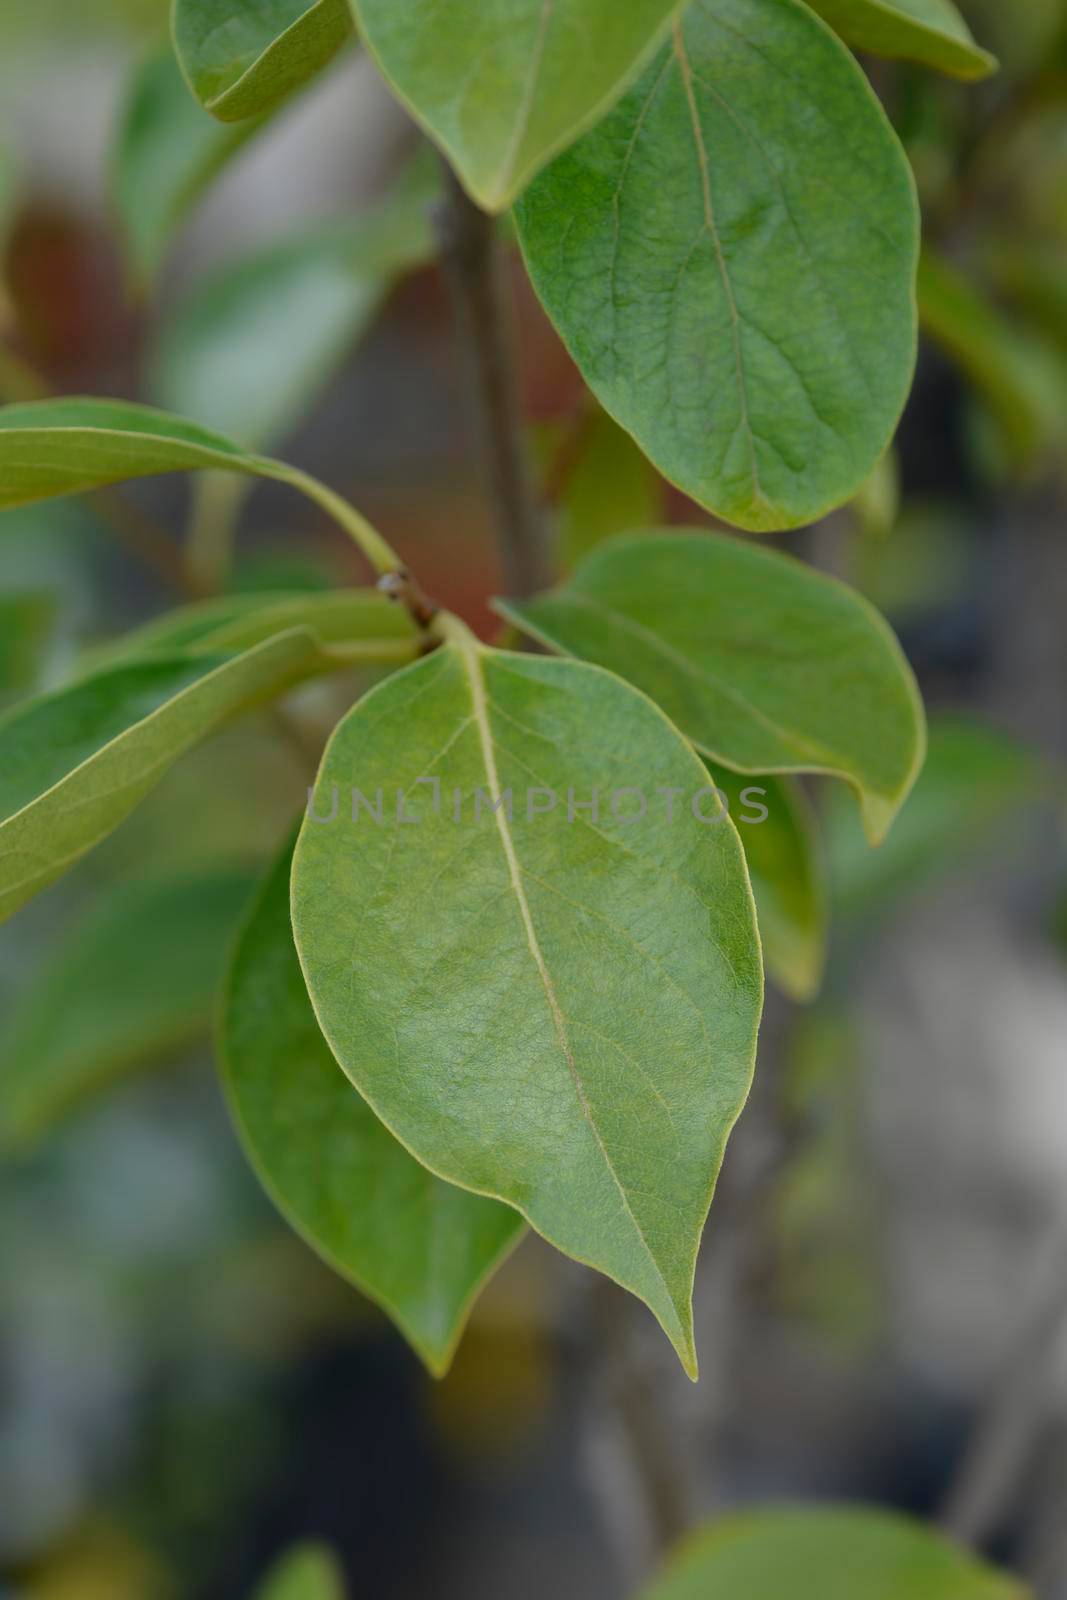 Oriental persimmon leaves - Latin name - Diospyros kaki